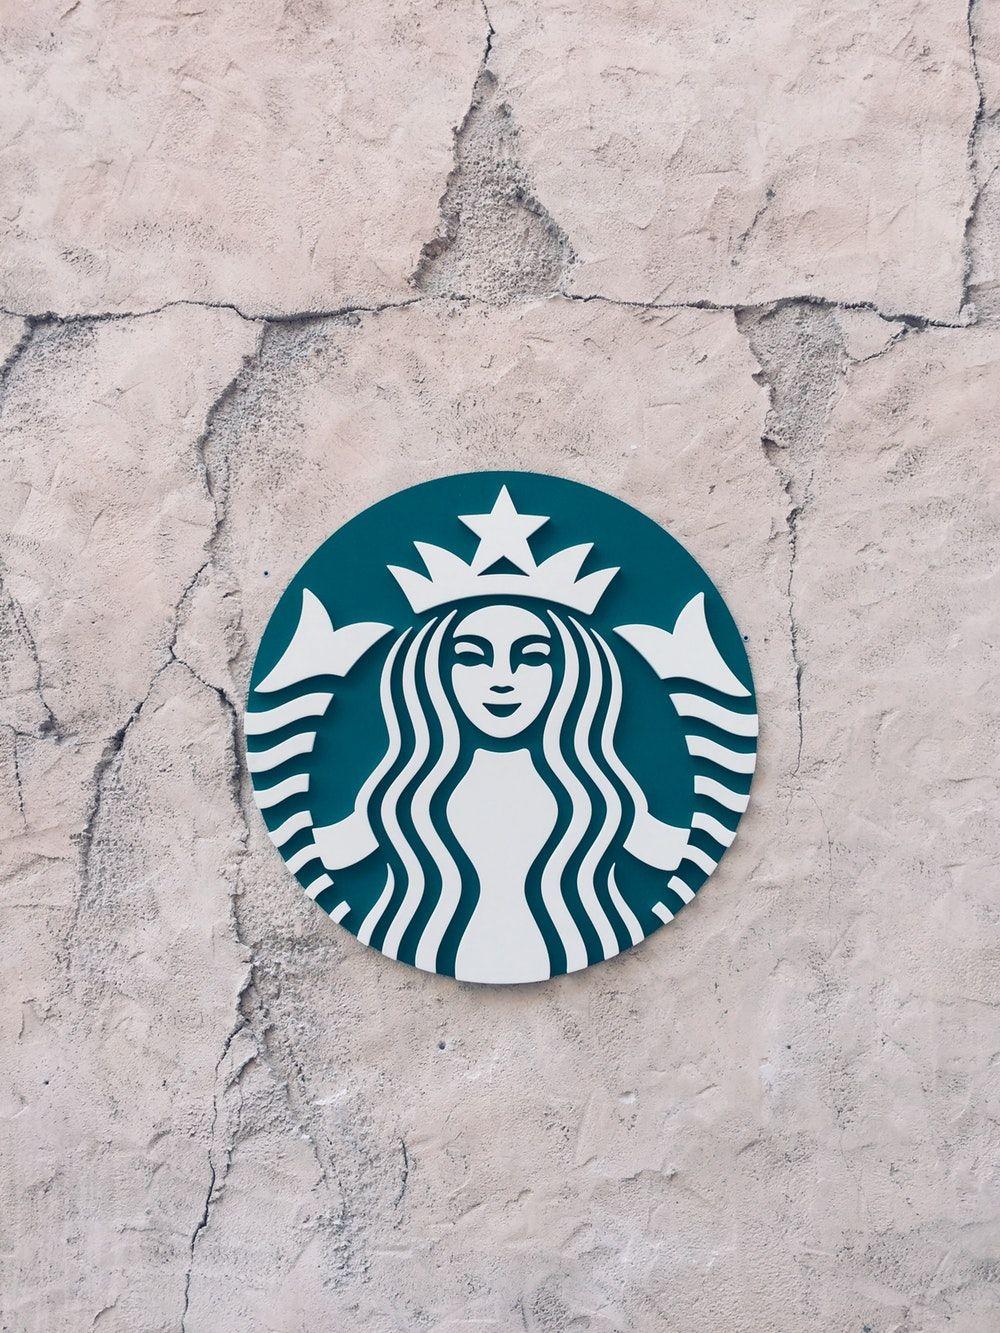 Blue Starbucks Logo - Starbucks Logo Picture. Download Free Image